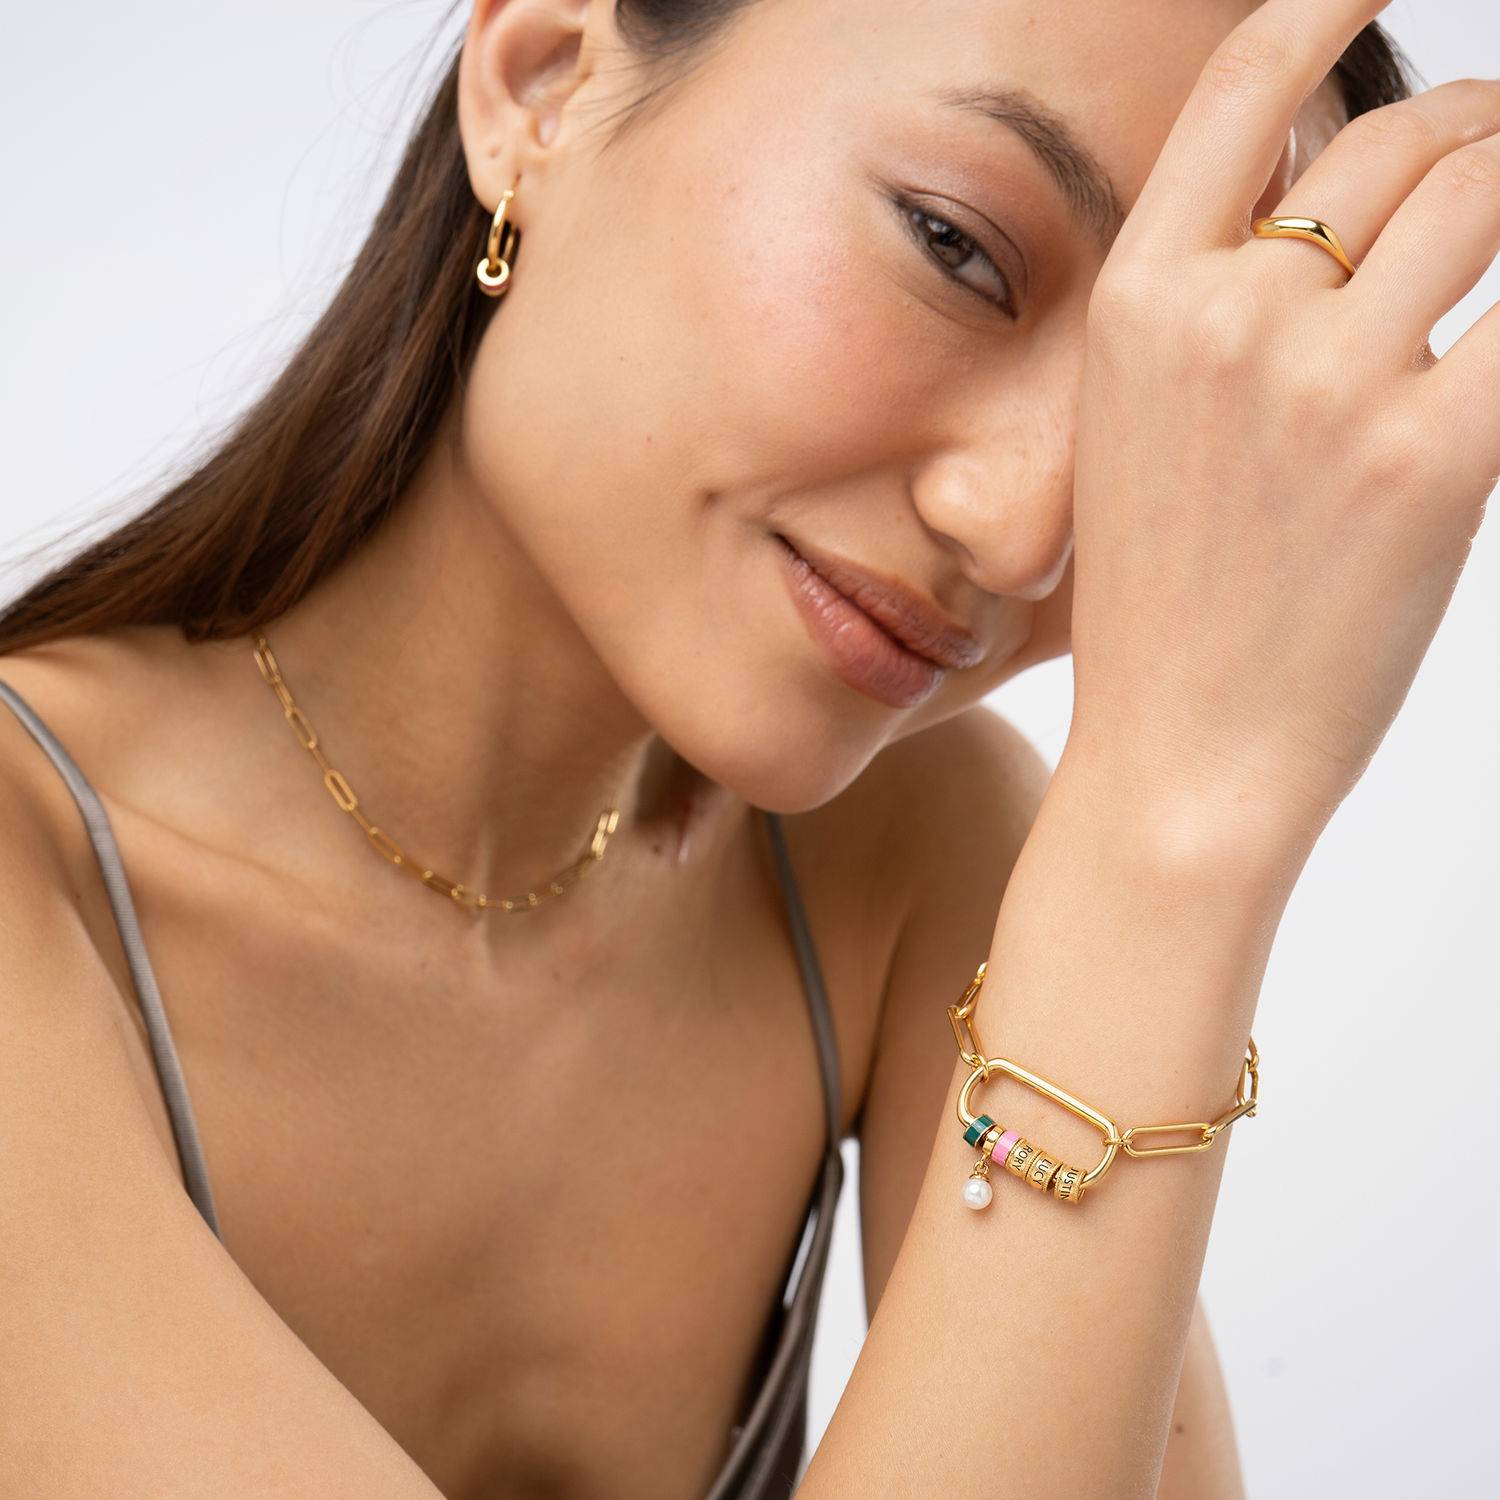 Linda armband met ovale sluiting en parel in 18k goud vermeil-1 Productfoto